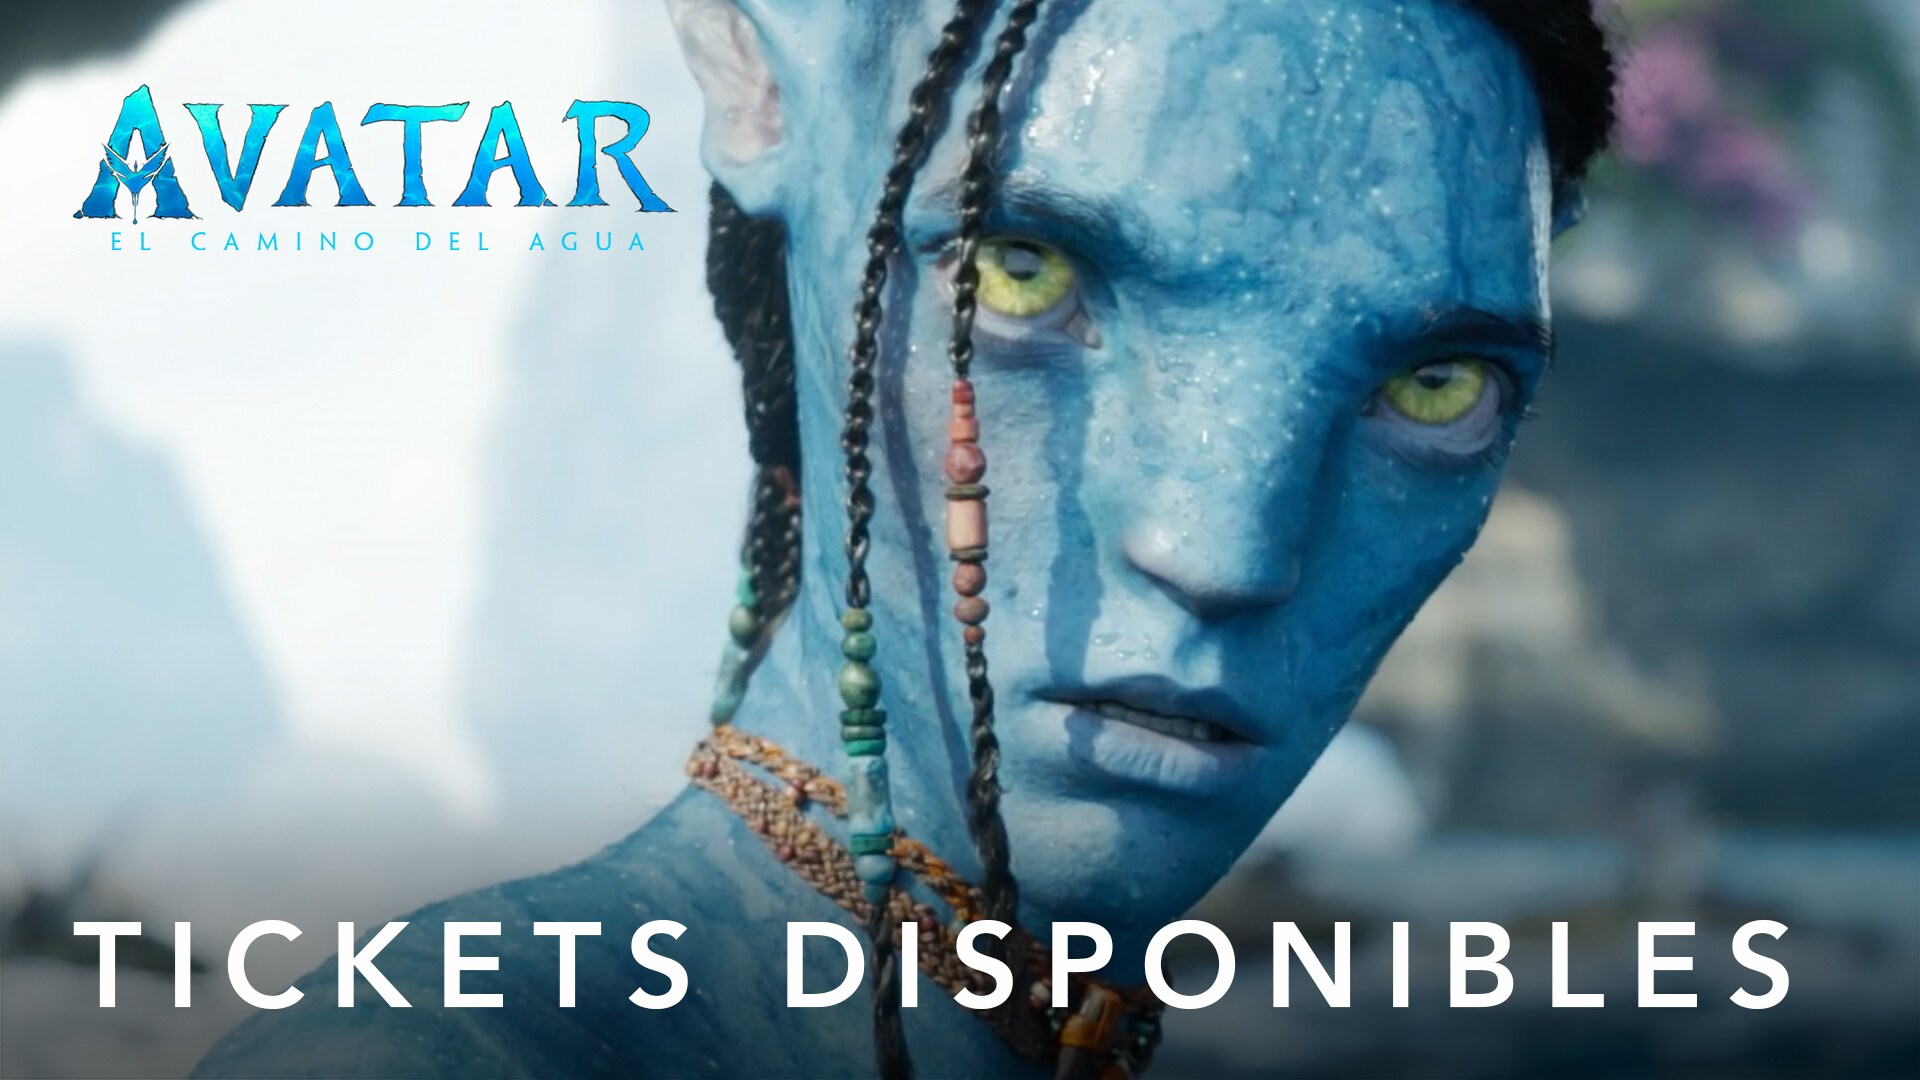 'Avatar: El Camino del Agua' | Tickets Disponibles